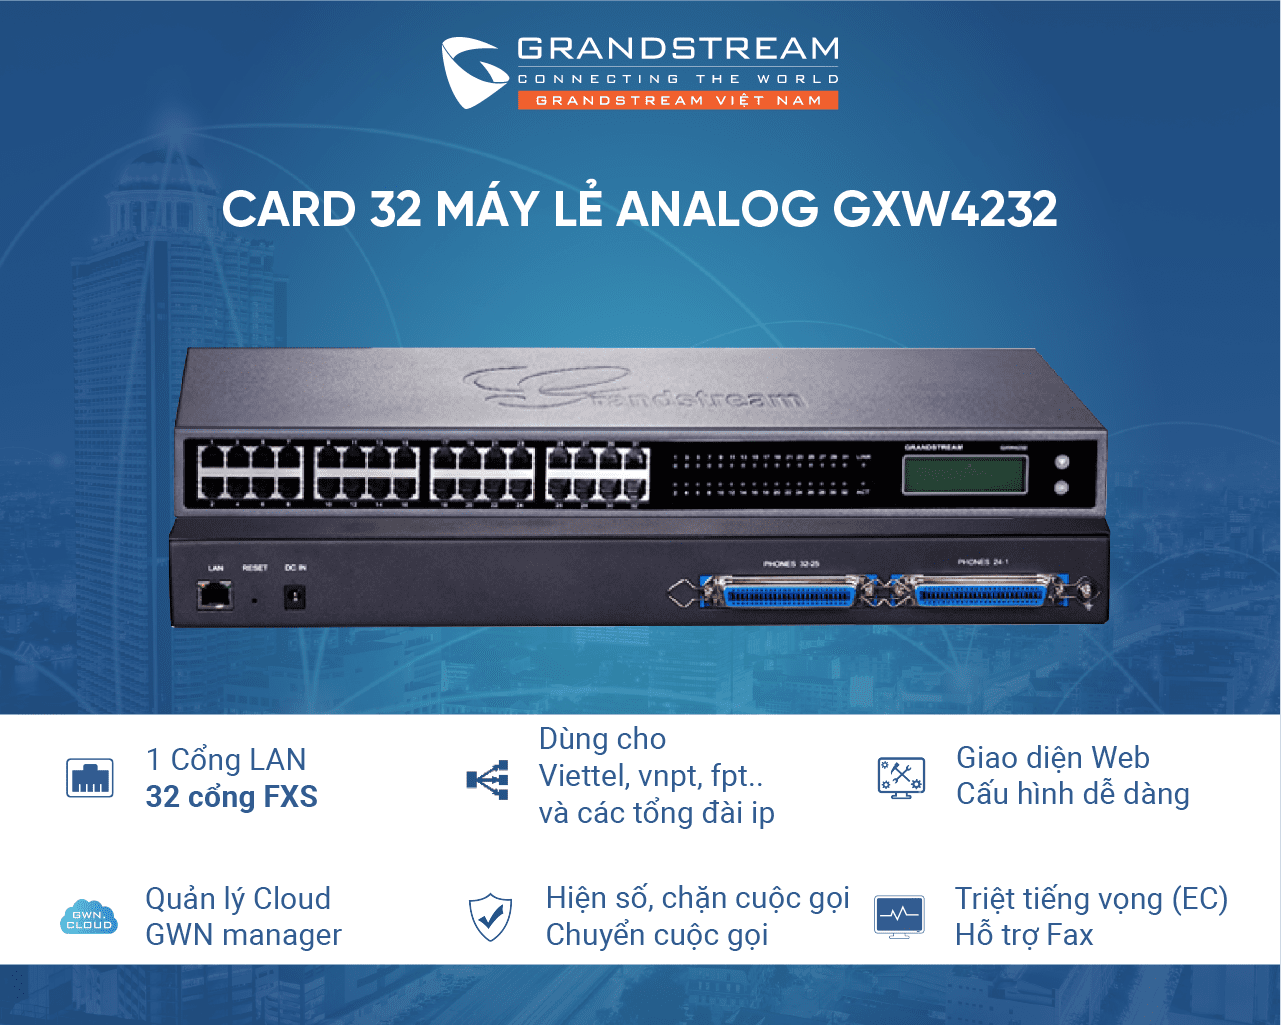 Card máy lẻ GXW4232  hay Gateway chuyển đổi VoiP sang 32 Analog GXW4232